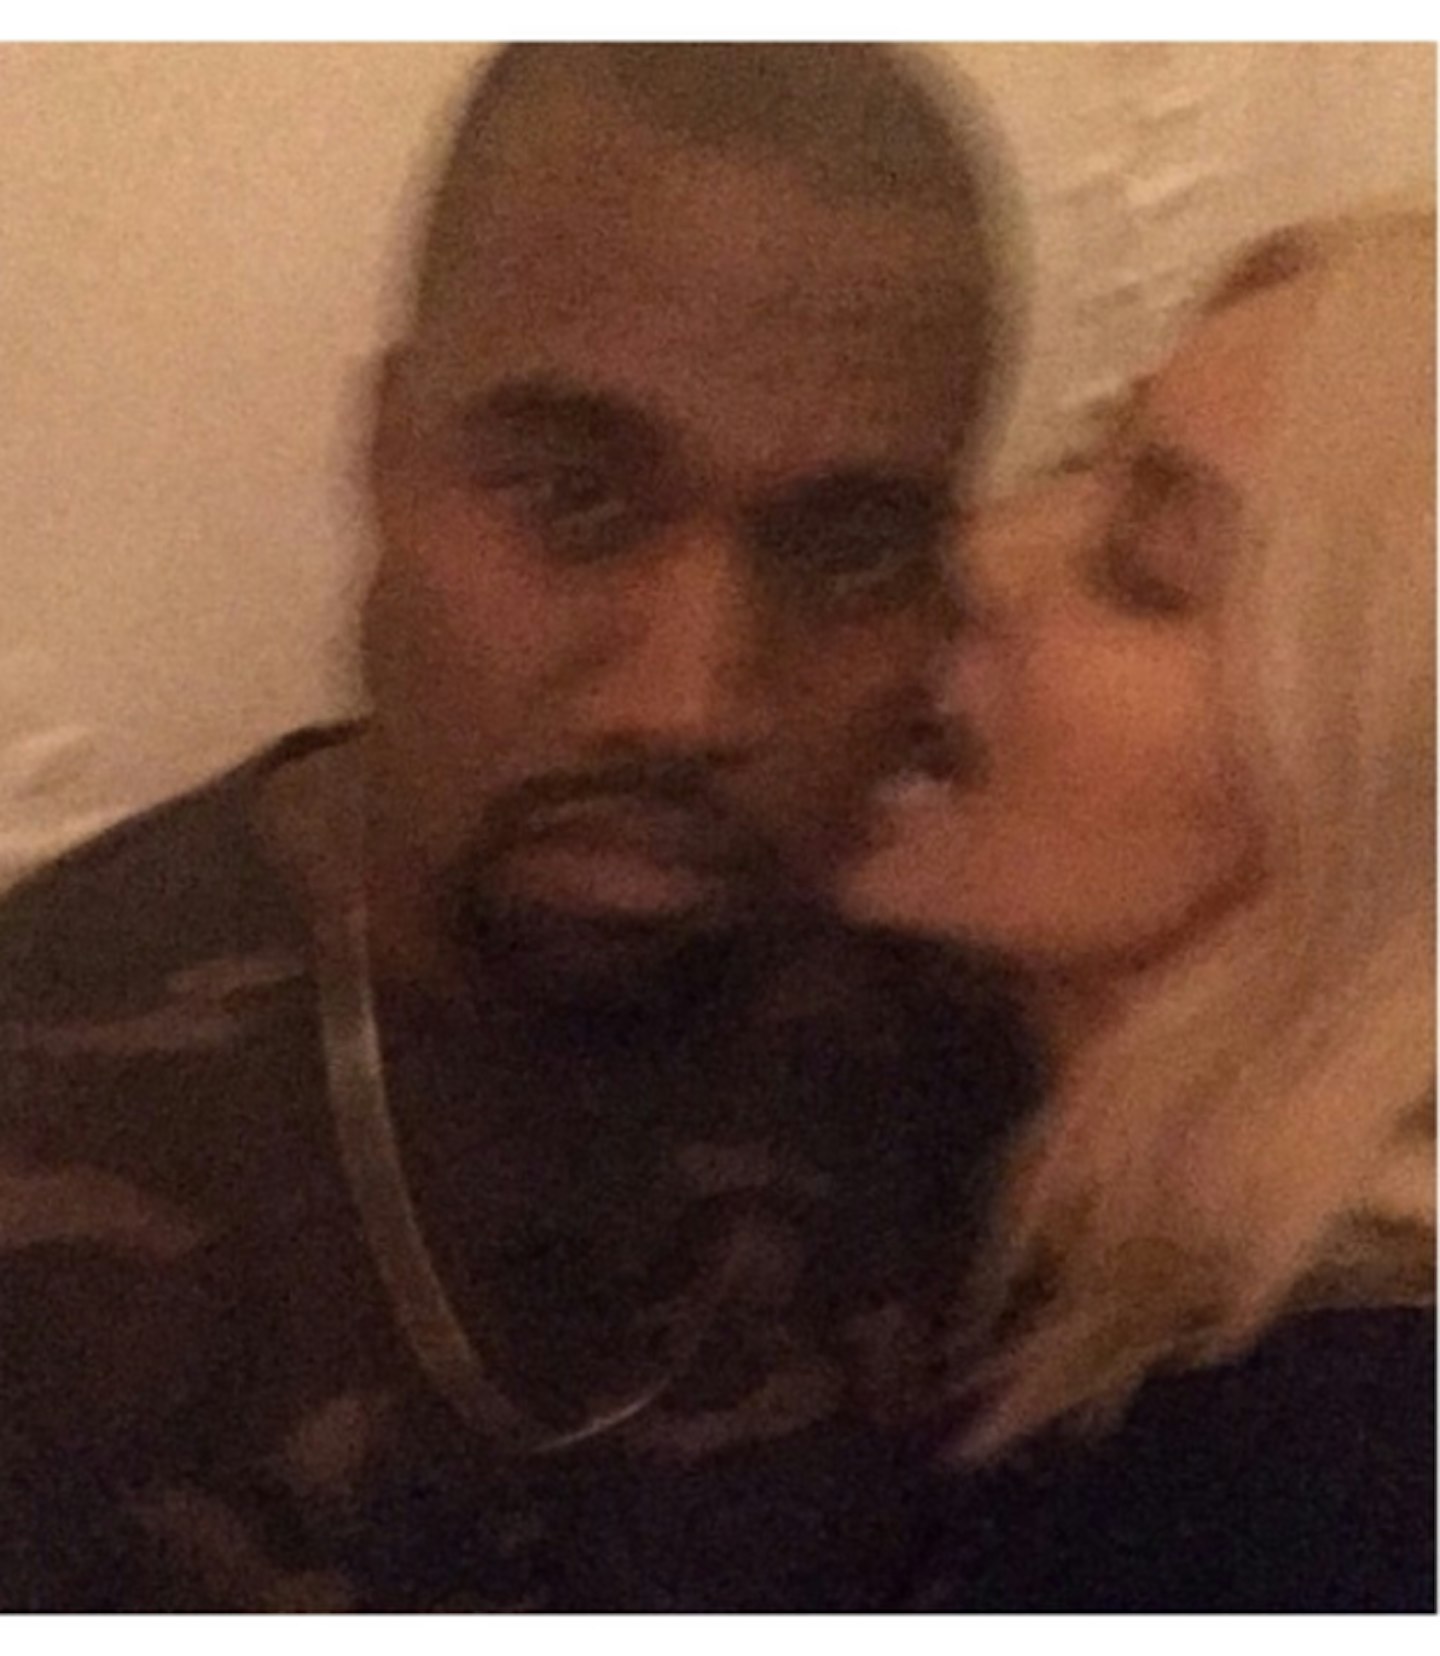 Tuesday: Kim and Kanye